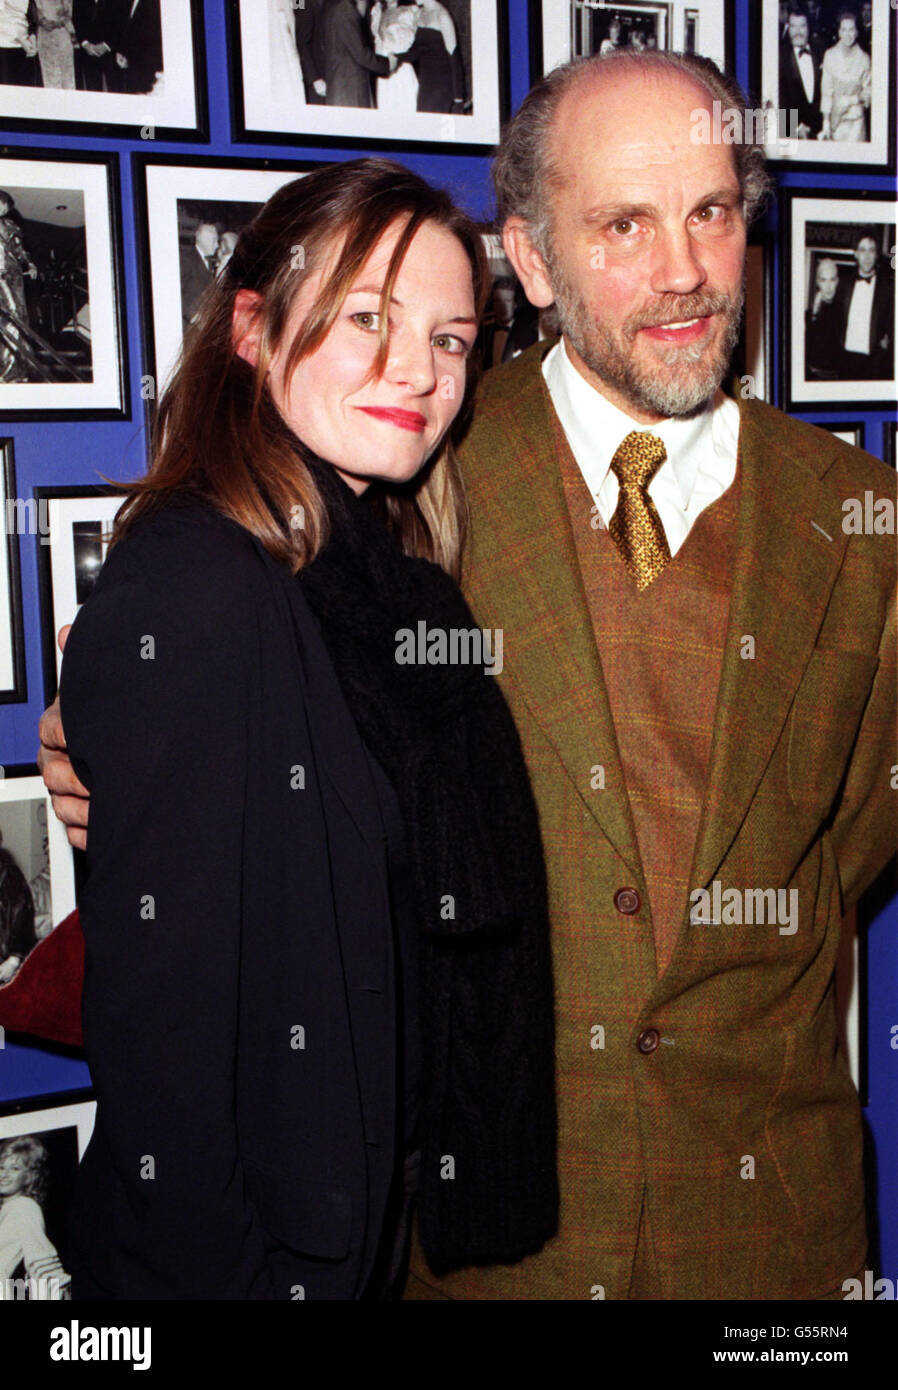 Der amerikanische Schauspieler John Malkovich und die Schauspielerin Catherine McCormack, zwei der Stars von 'Shadow of the Vampire', kommen zur Premiere des Films, der Teil des London Film Festivals ist, im Odeon West End Kino an. Stockfoto